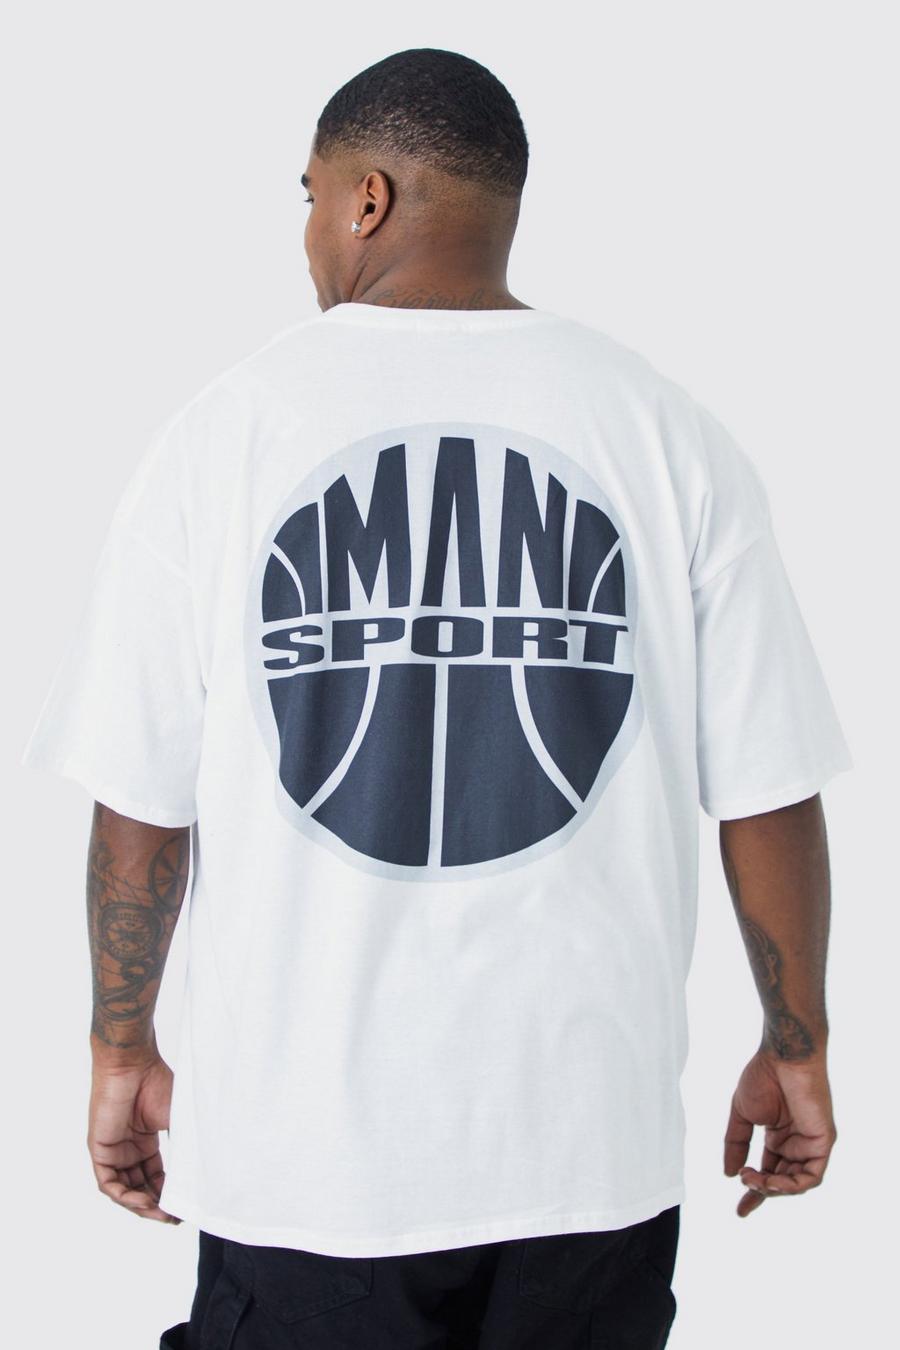 T-shirt Plus Size con stampa Man Sport sul retro, White